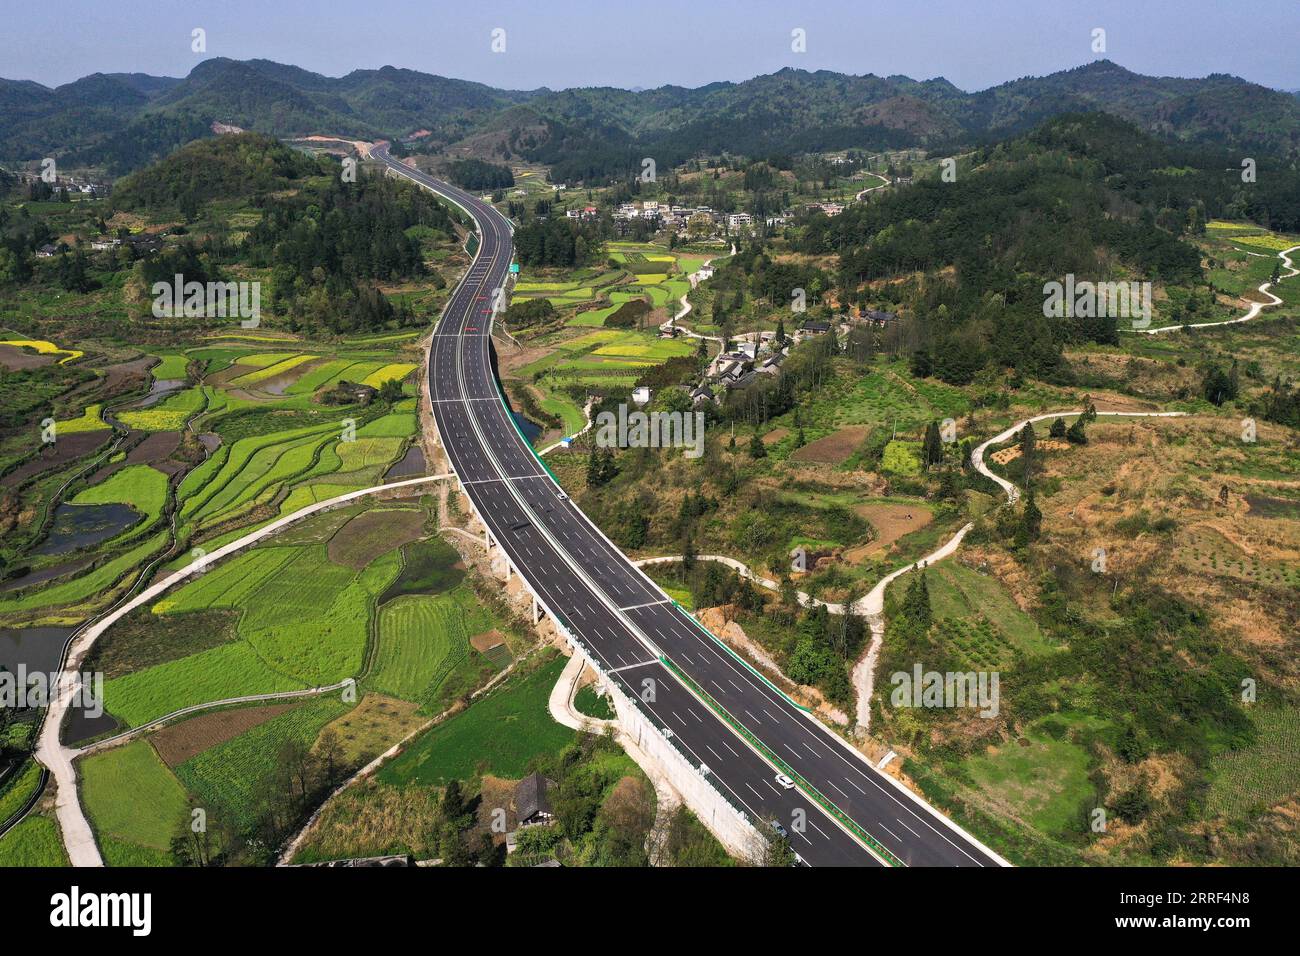 220328 -- GUIDING, 28. März 2022 -- Luftaufnahme aufgenommen am 28. März 2022 zeigt einen Abschnitt des Guiyang-Huangping Highway in Guiding County, südwestchinesische Provinz Guizhou. Der Bau der Hauptstrecke des Guiyang-Huangping Highway ist in die letzte Phase eingetreten und soll in diesem Jahr abgeschlossen werden. Die Hauptstrecke dieser Autobahn erstreckt sich über 120,6 Kilometer und wird Guizhou mit dem Yangtze-Delta verbinden. CHINA-GUIZHOU-GUIYANG-HUANGPING-HIGHWAY CN YangxWenbin PUBLICATIONxNOTxINxCHN 220328 -- GUIDING, 28. März 2022 -- Luftaufnahme aufgenommen am 28. März 2022 zeigt eine Sektio Stockfoto